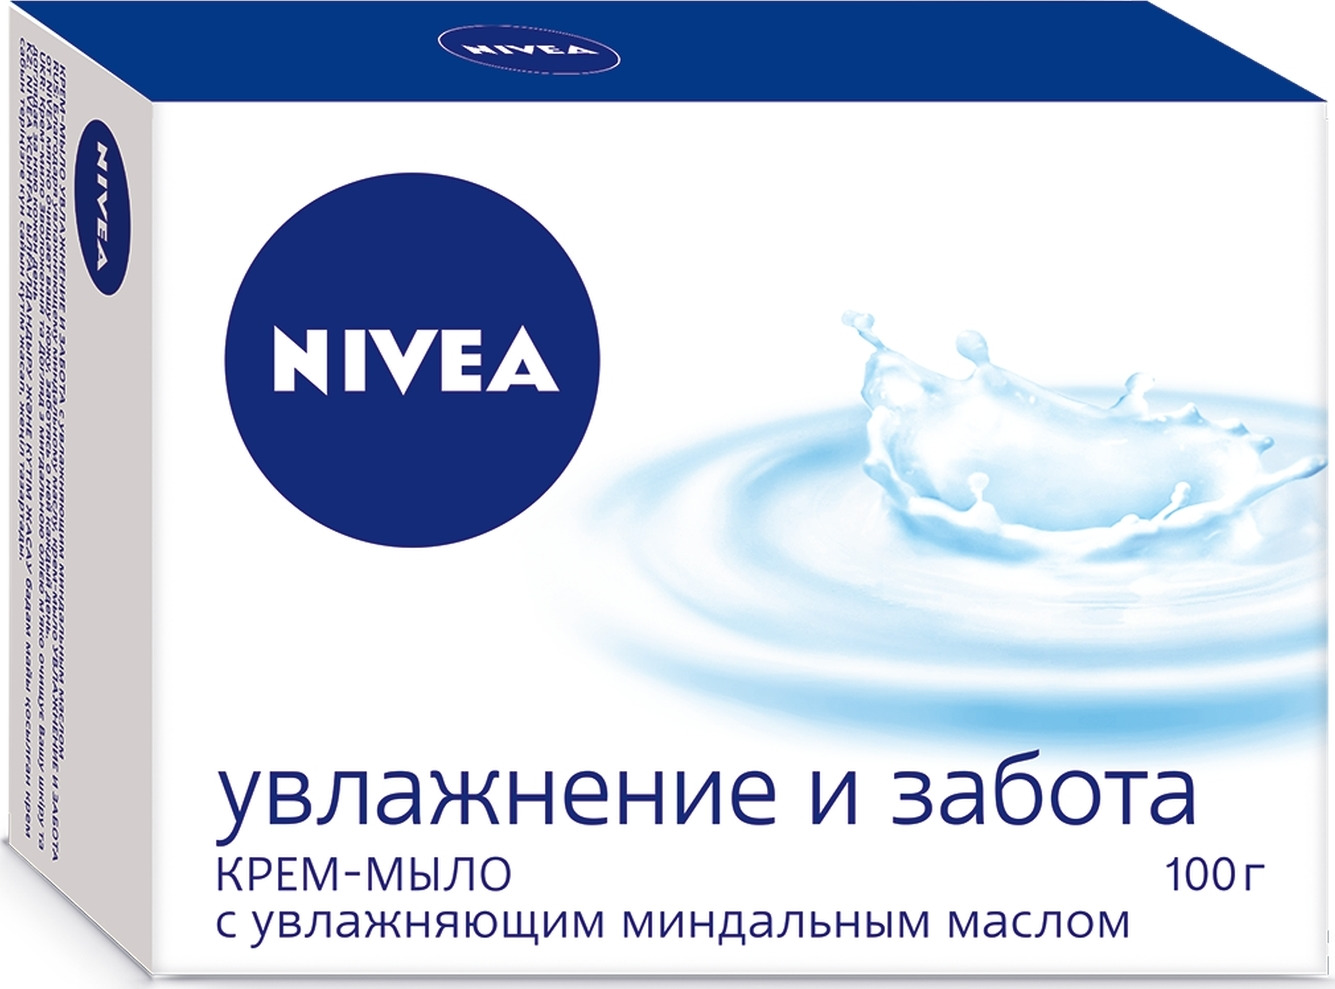 Крем-мыло Nivea 